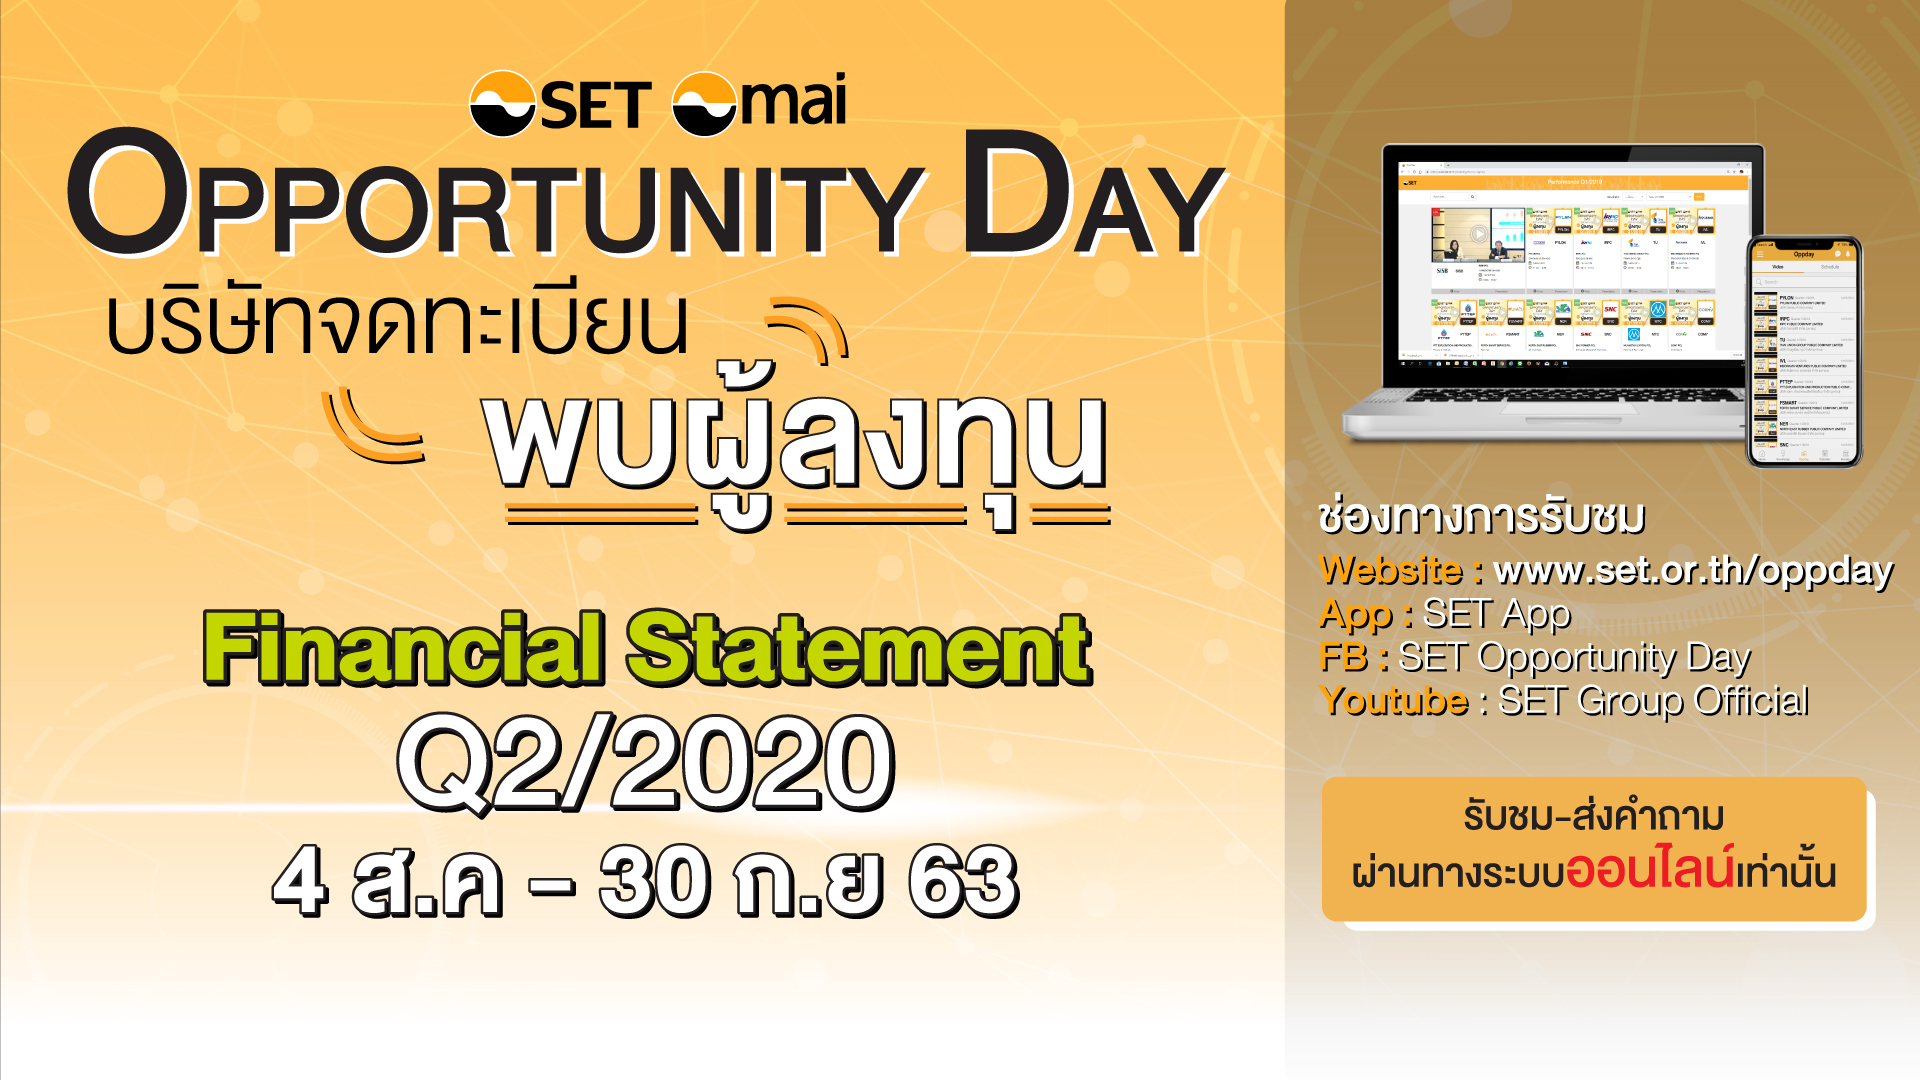 ตลาดหลักทรัพย์แห่งประเทศไทย ขอนำส่งข่าวสั้น ตลาดหลักทรัพย์ฯ เชิญรับชมกิจกรรม Opportunity Day ไตรมาส 2/2563 ผ่านช่องทางออนไลน์